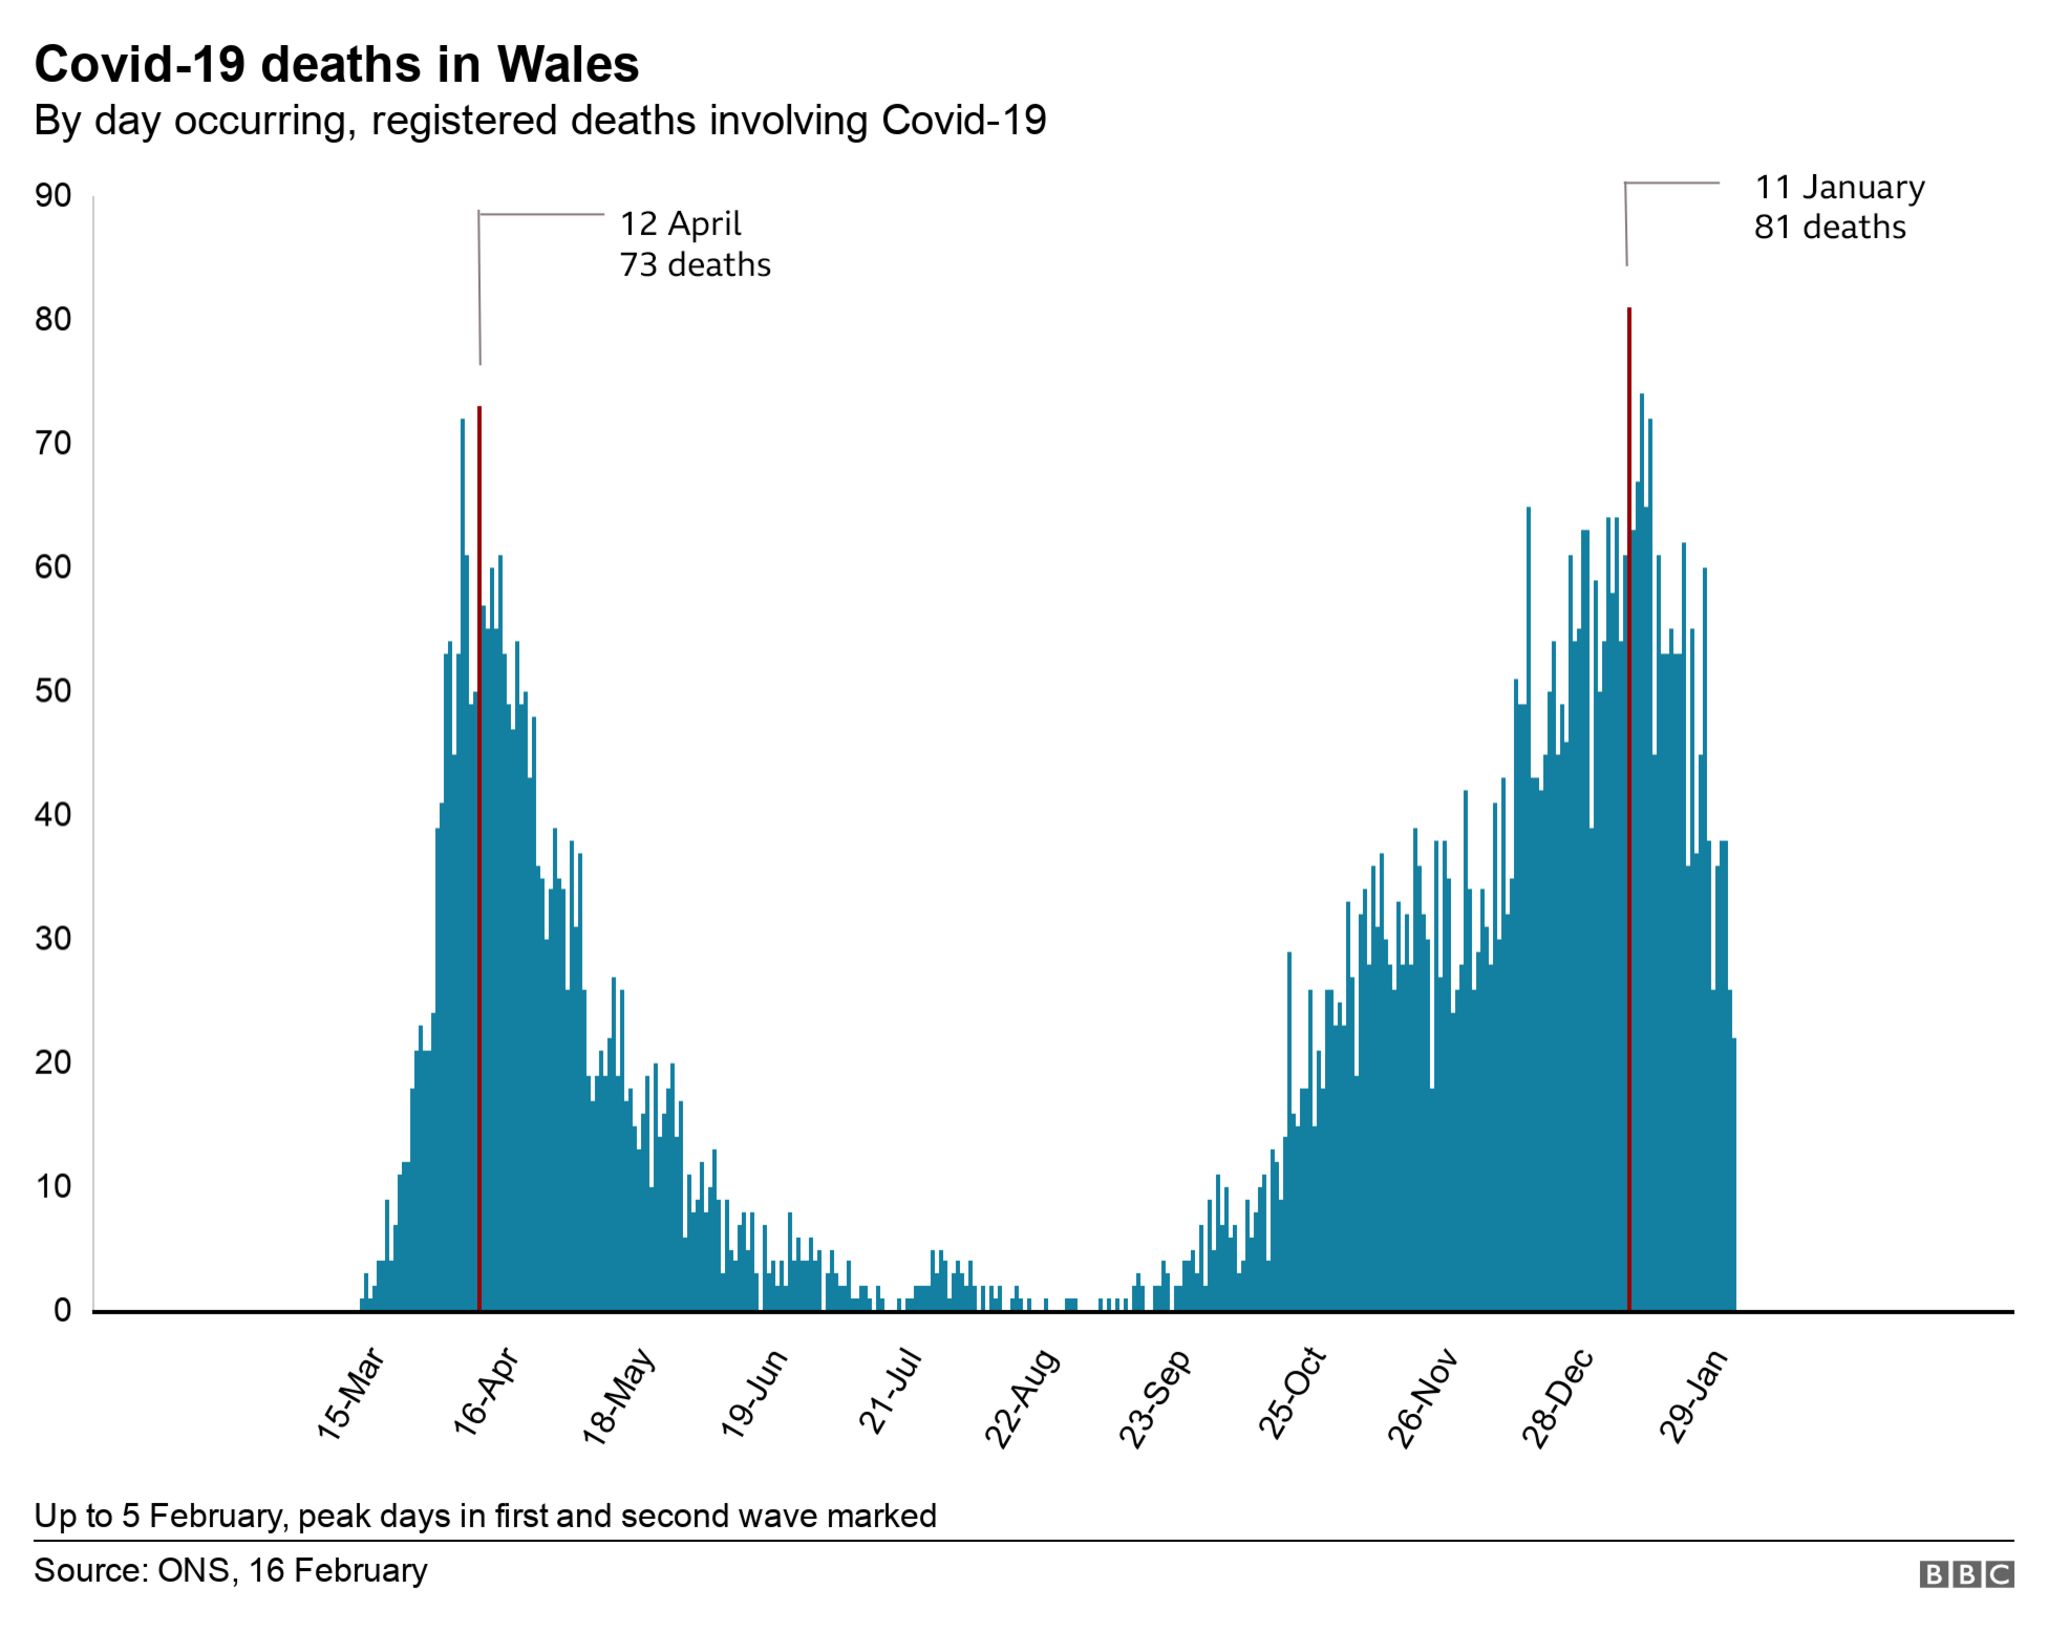 Peak deaths in Wales